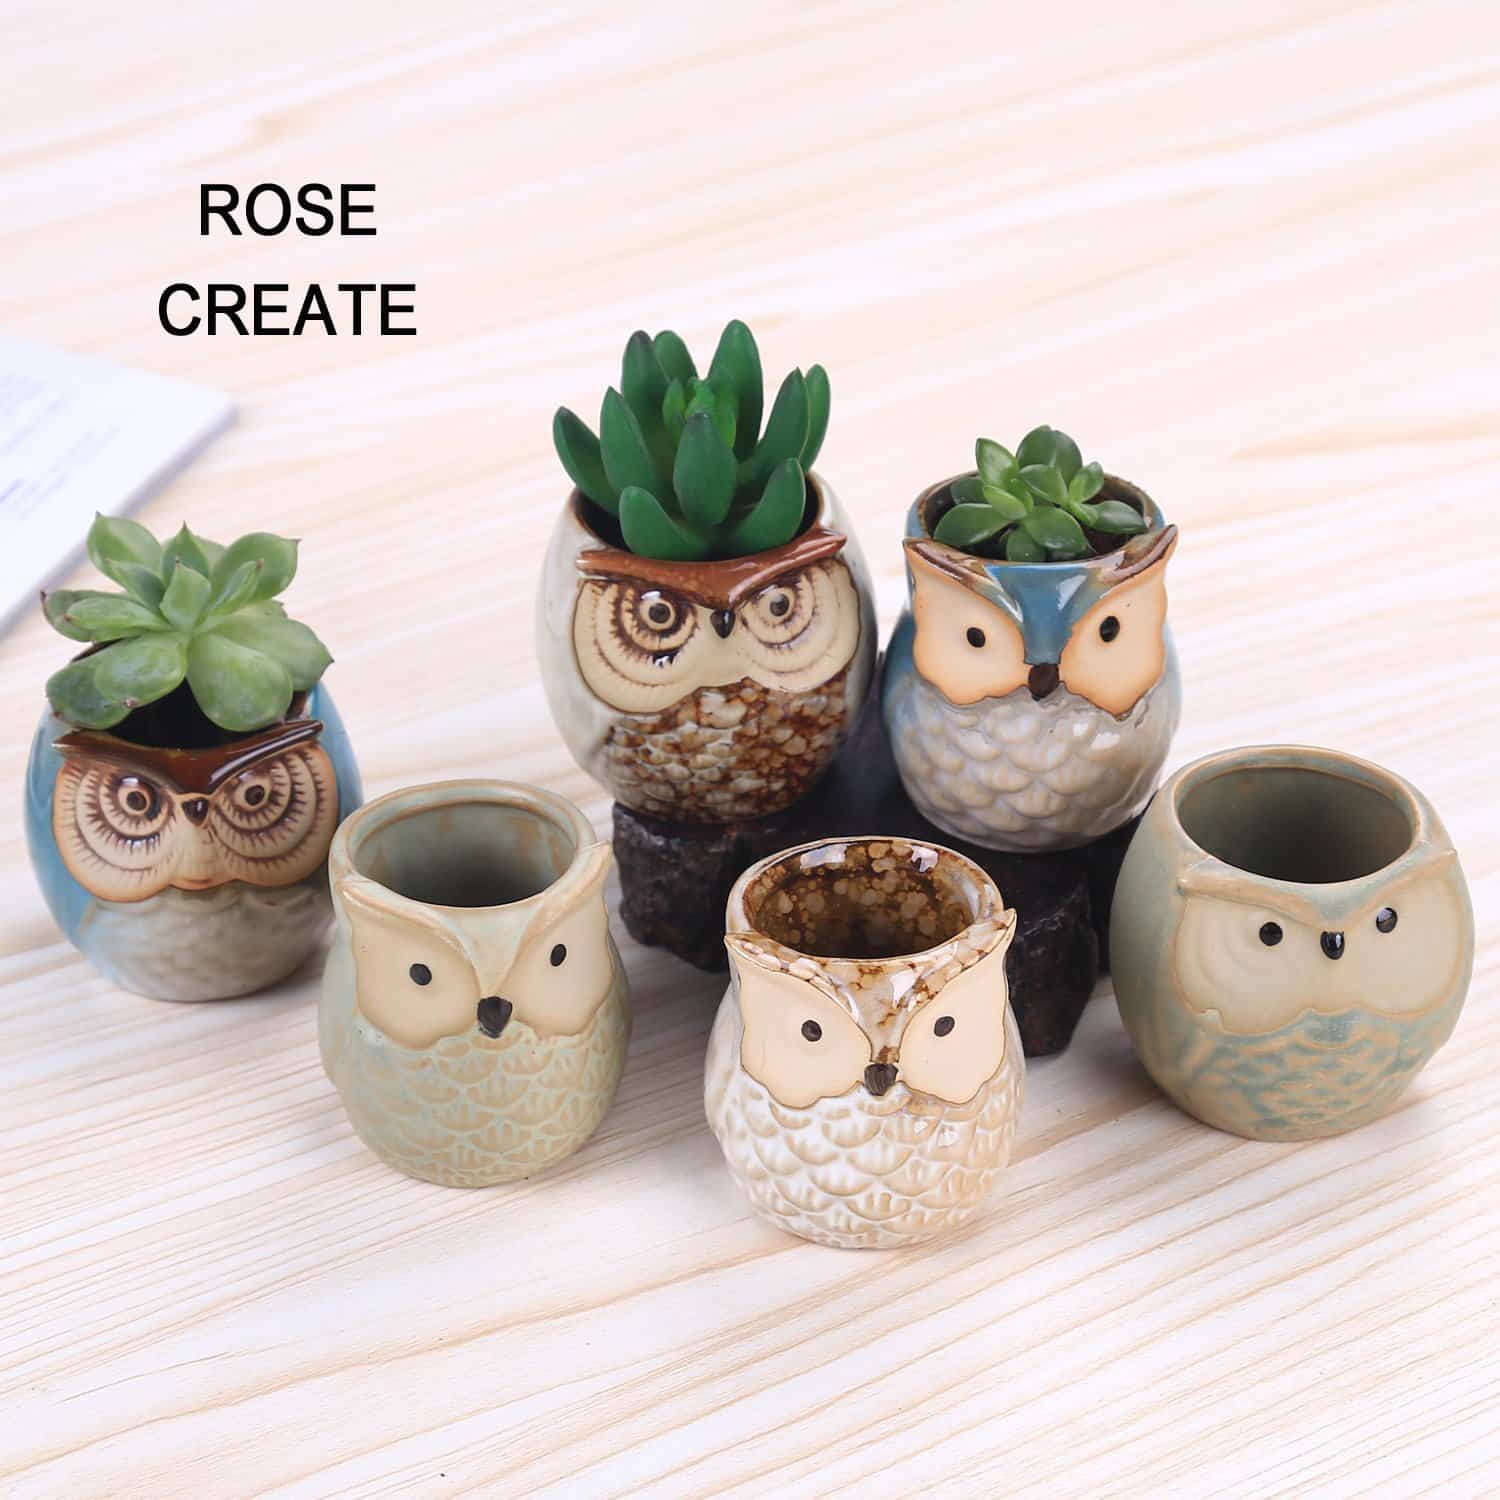 Rose Create Ceramic Owl Pots